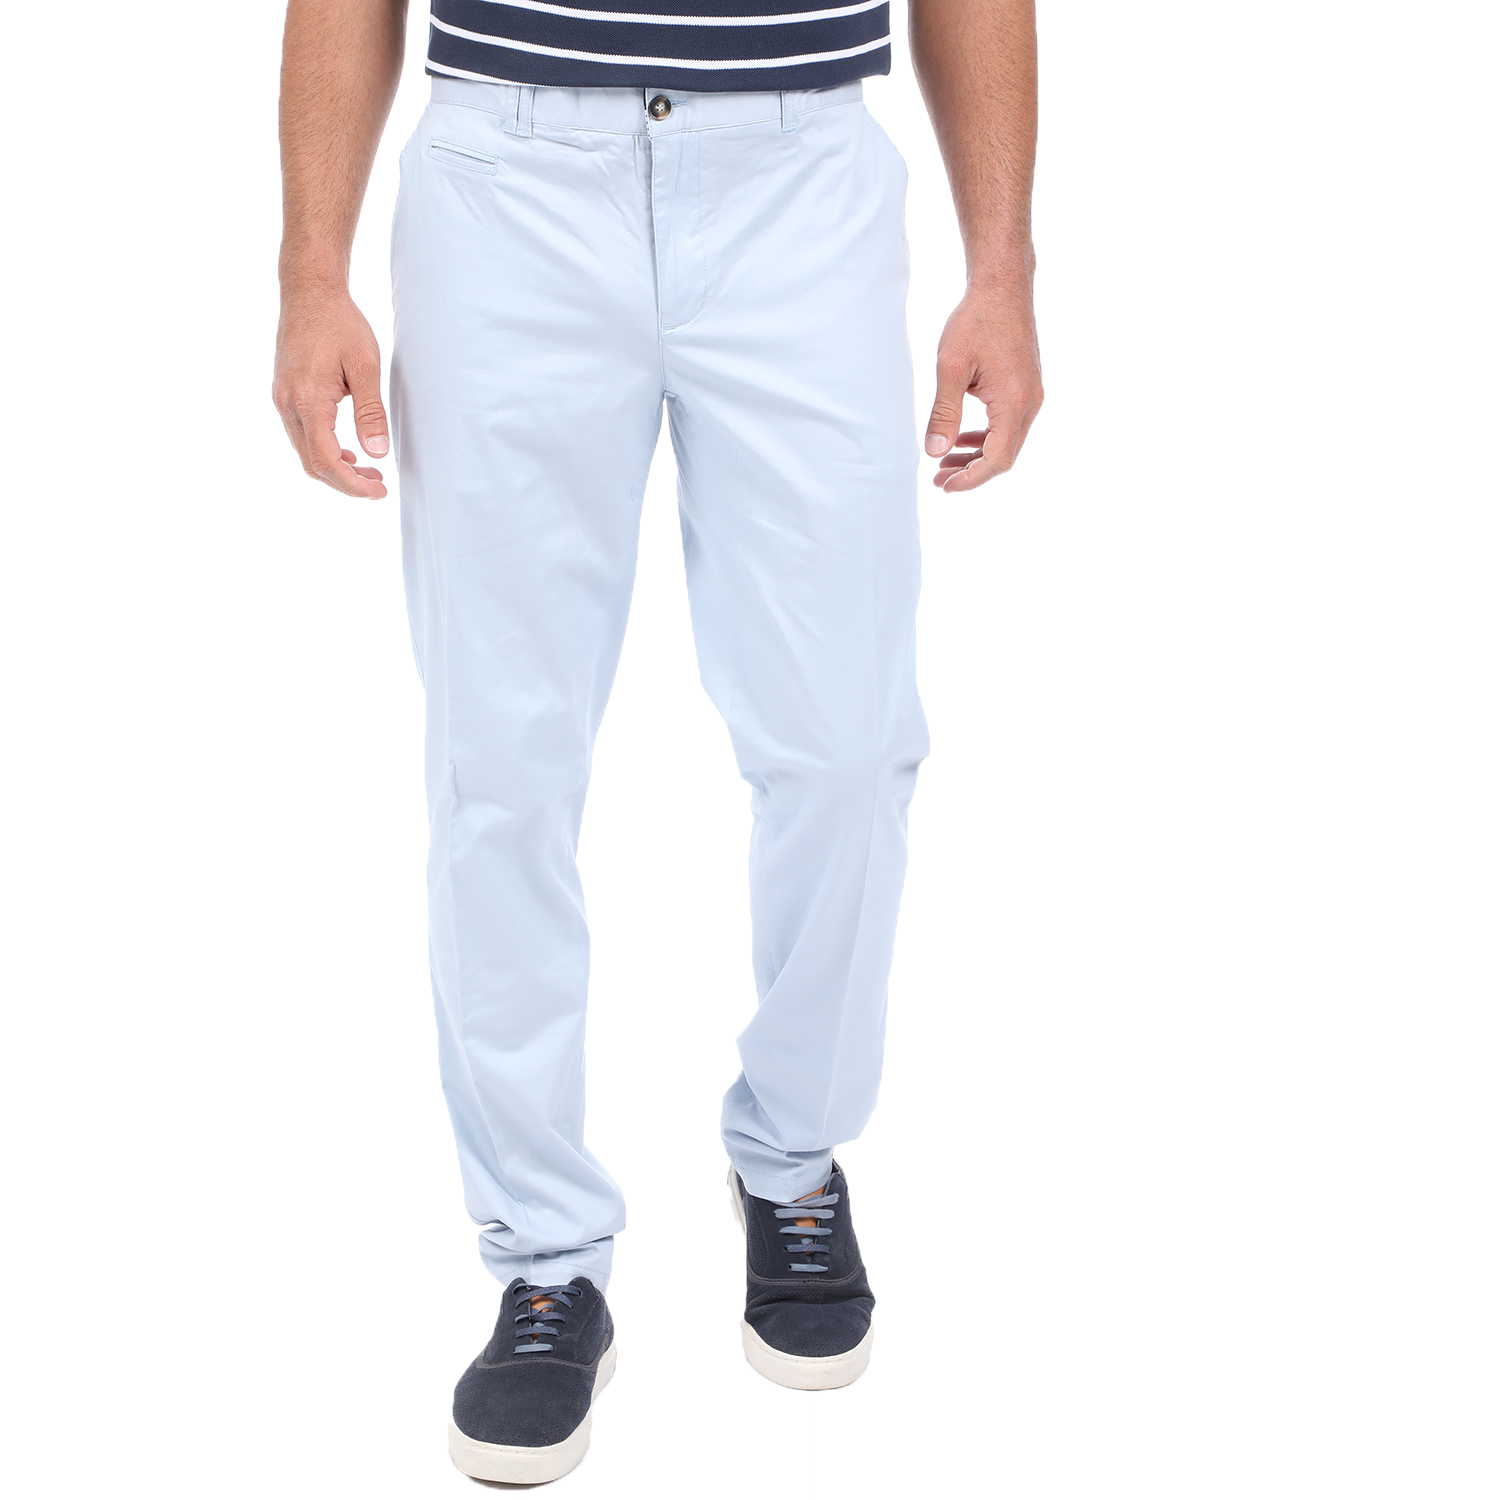 Ανδρικά/Ρούχα/Παντελόνια/Chinos MARTIN & CO - Ανδρικό chino παντελόνι MARTIN & CO SLIM μπλε